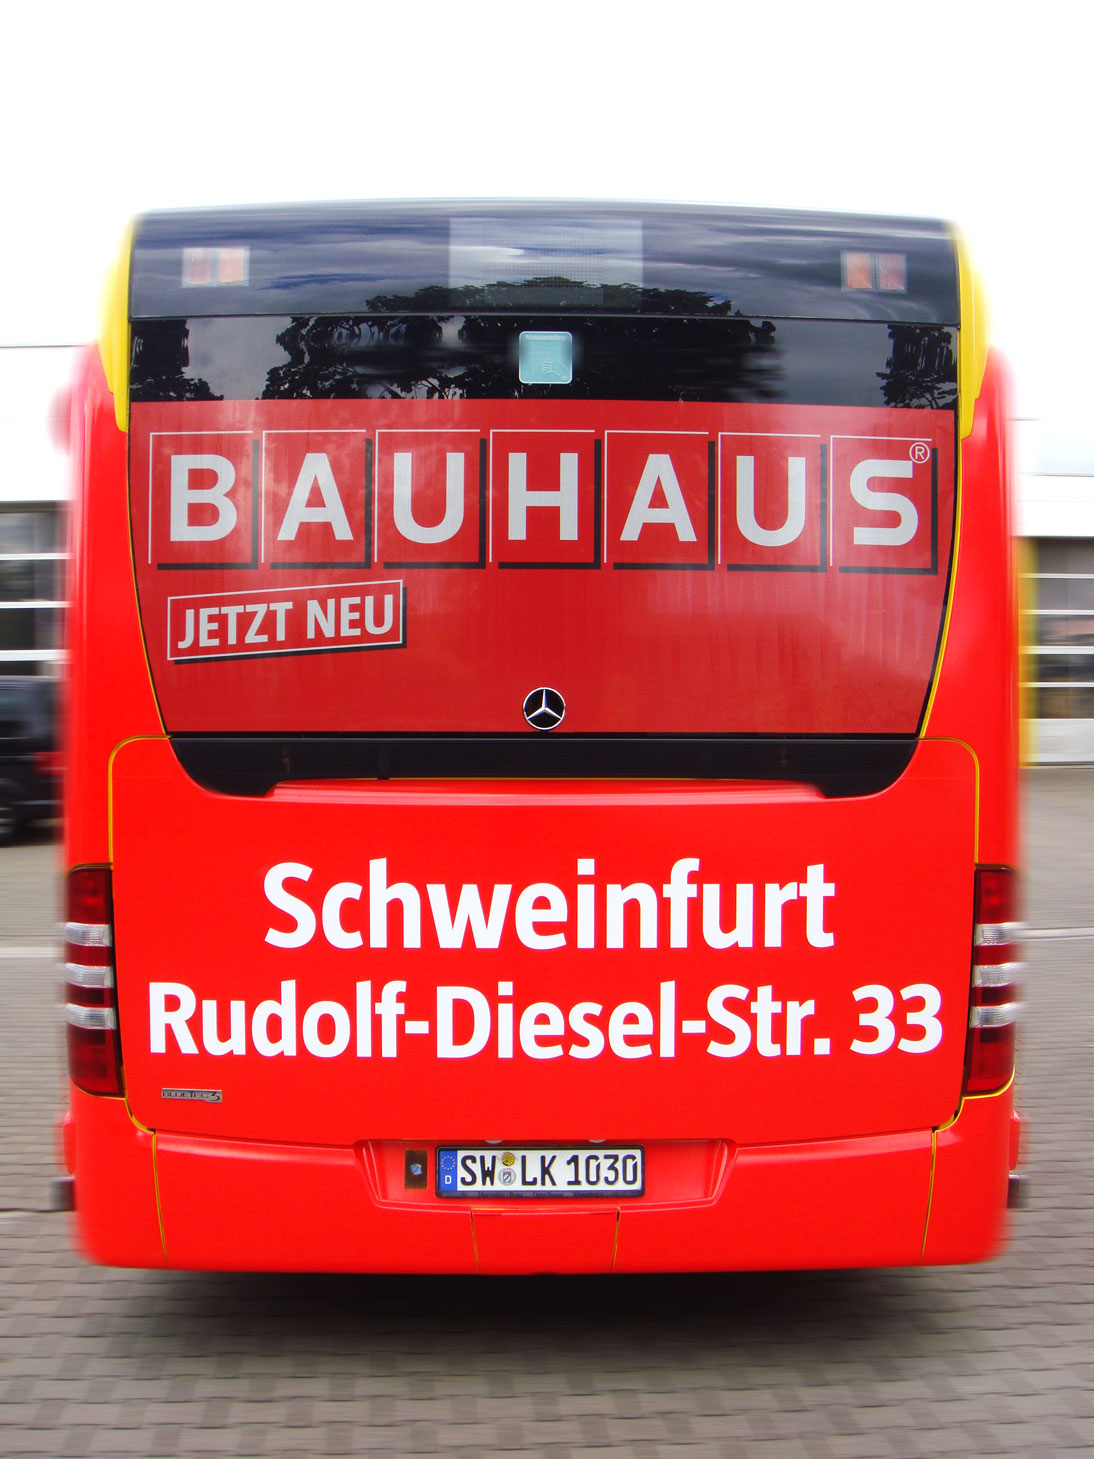 Buswerbung - Bauhaus - Heck